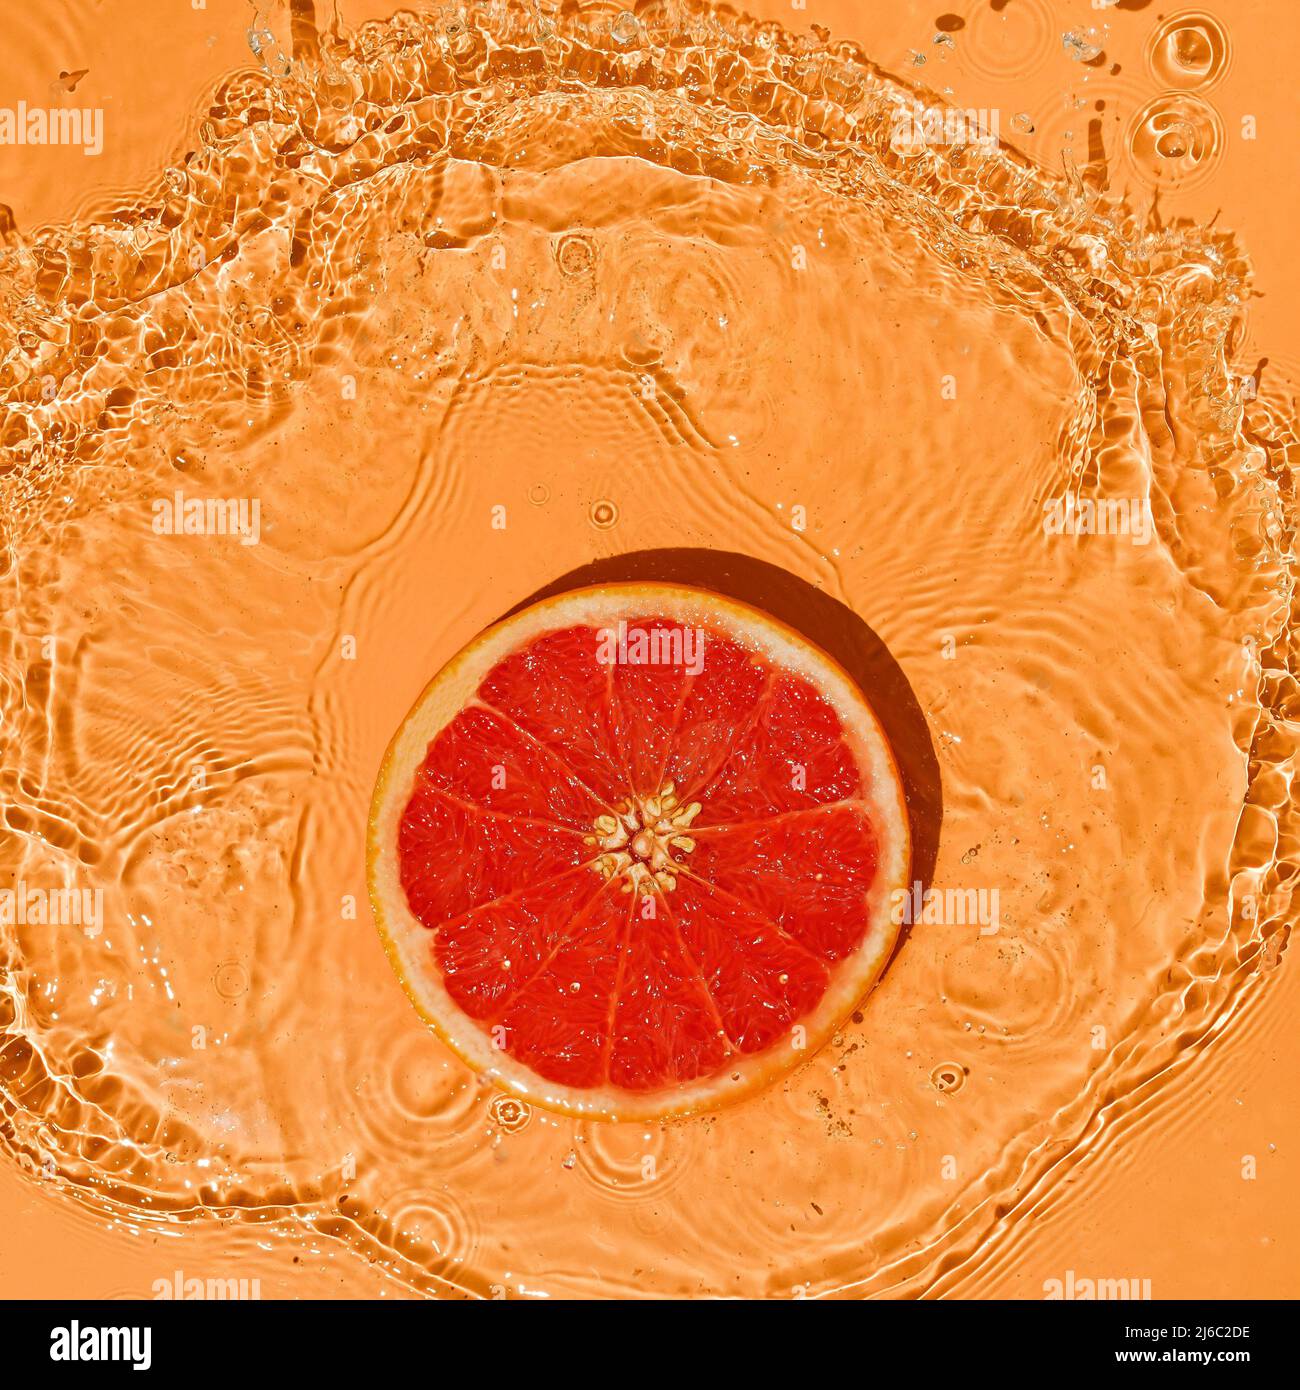 Fruit d'été concept pamplemousse rouge citronné sur fond orange vif avec des éclaboussures de mouvement d'eau. Banque D'Images